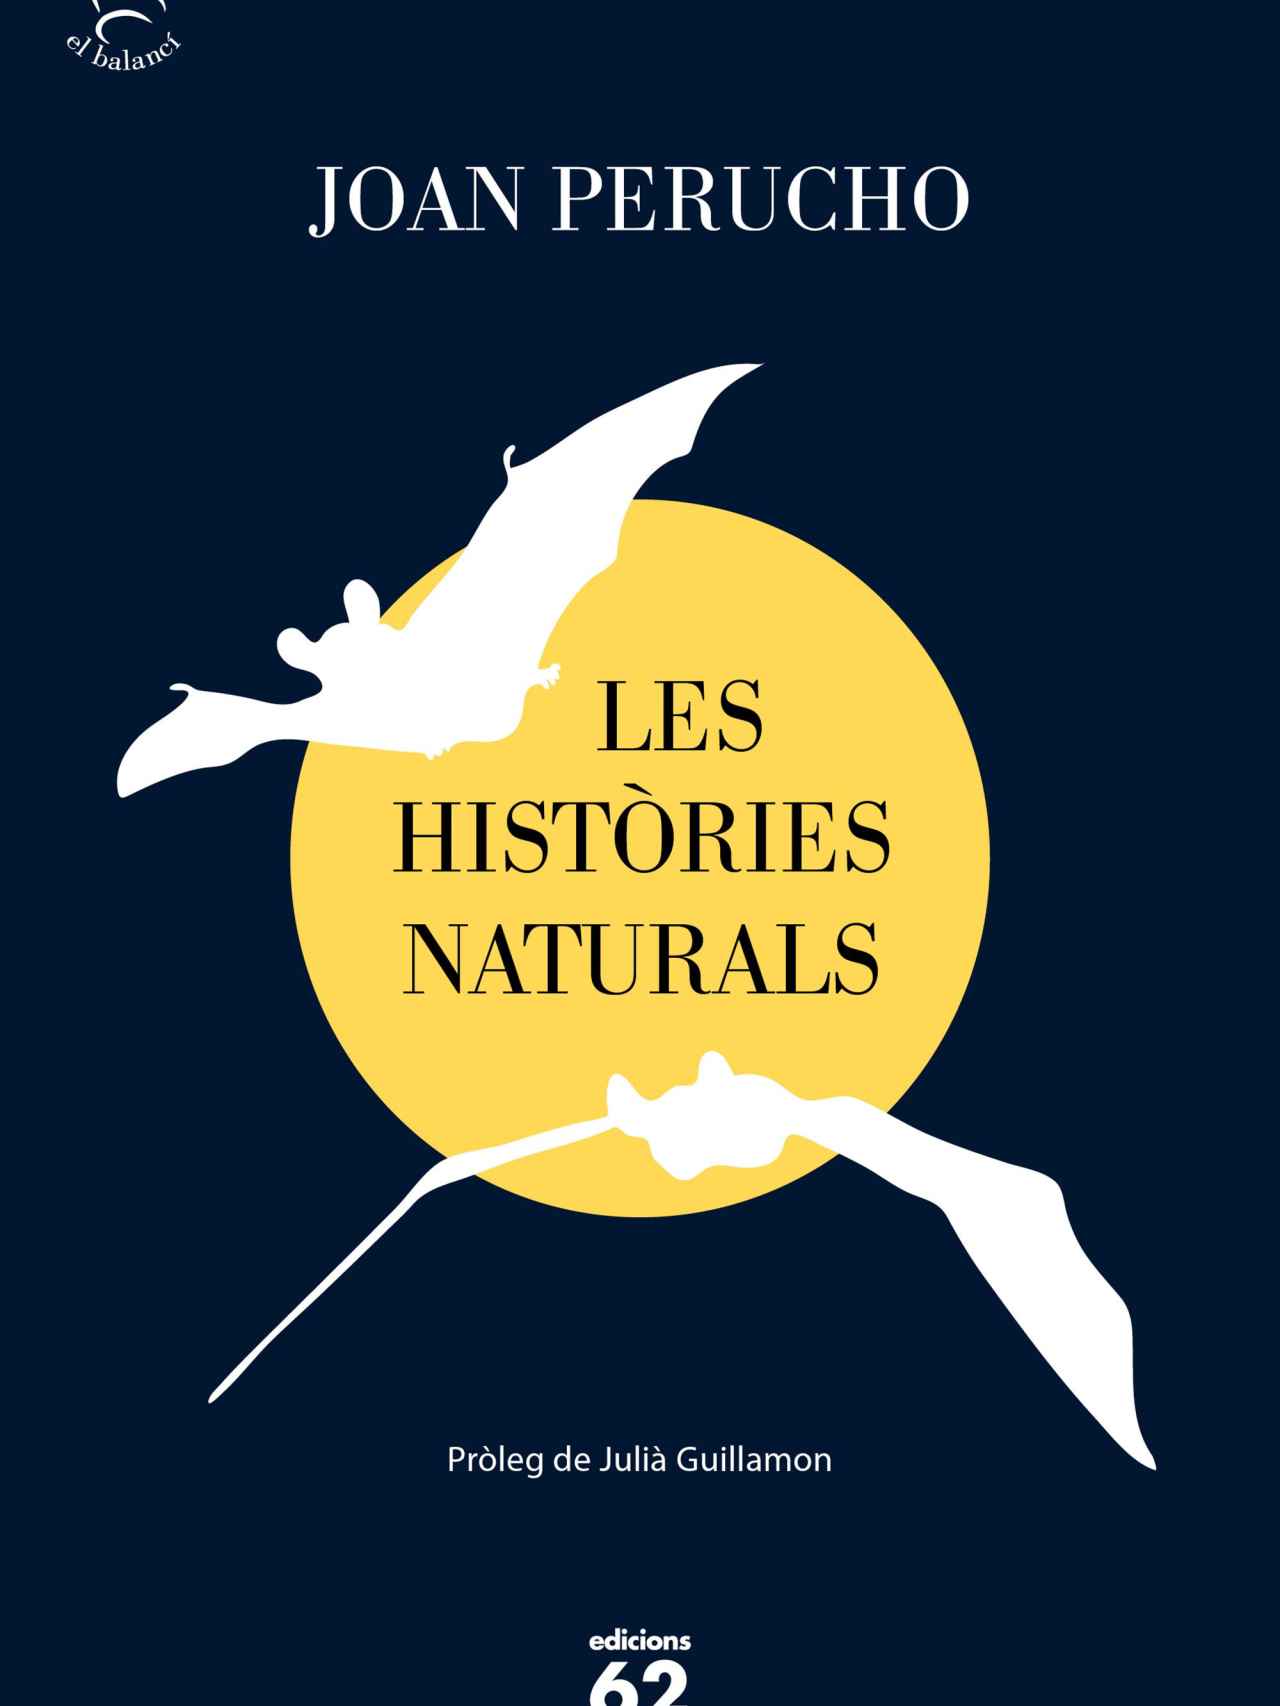 Tapa de 'Les històries naturals', de Juan Perucho